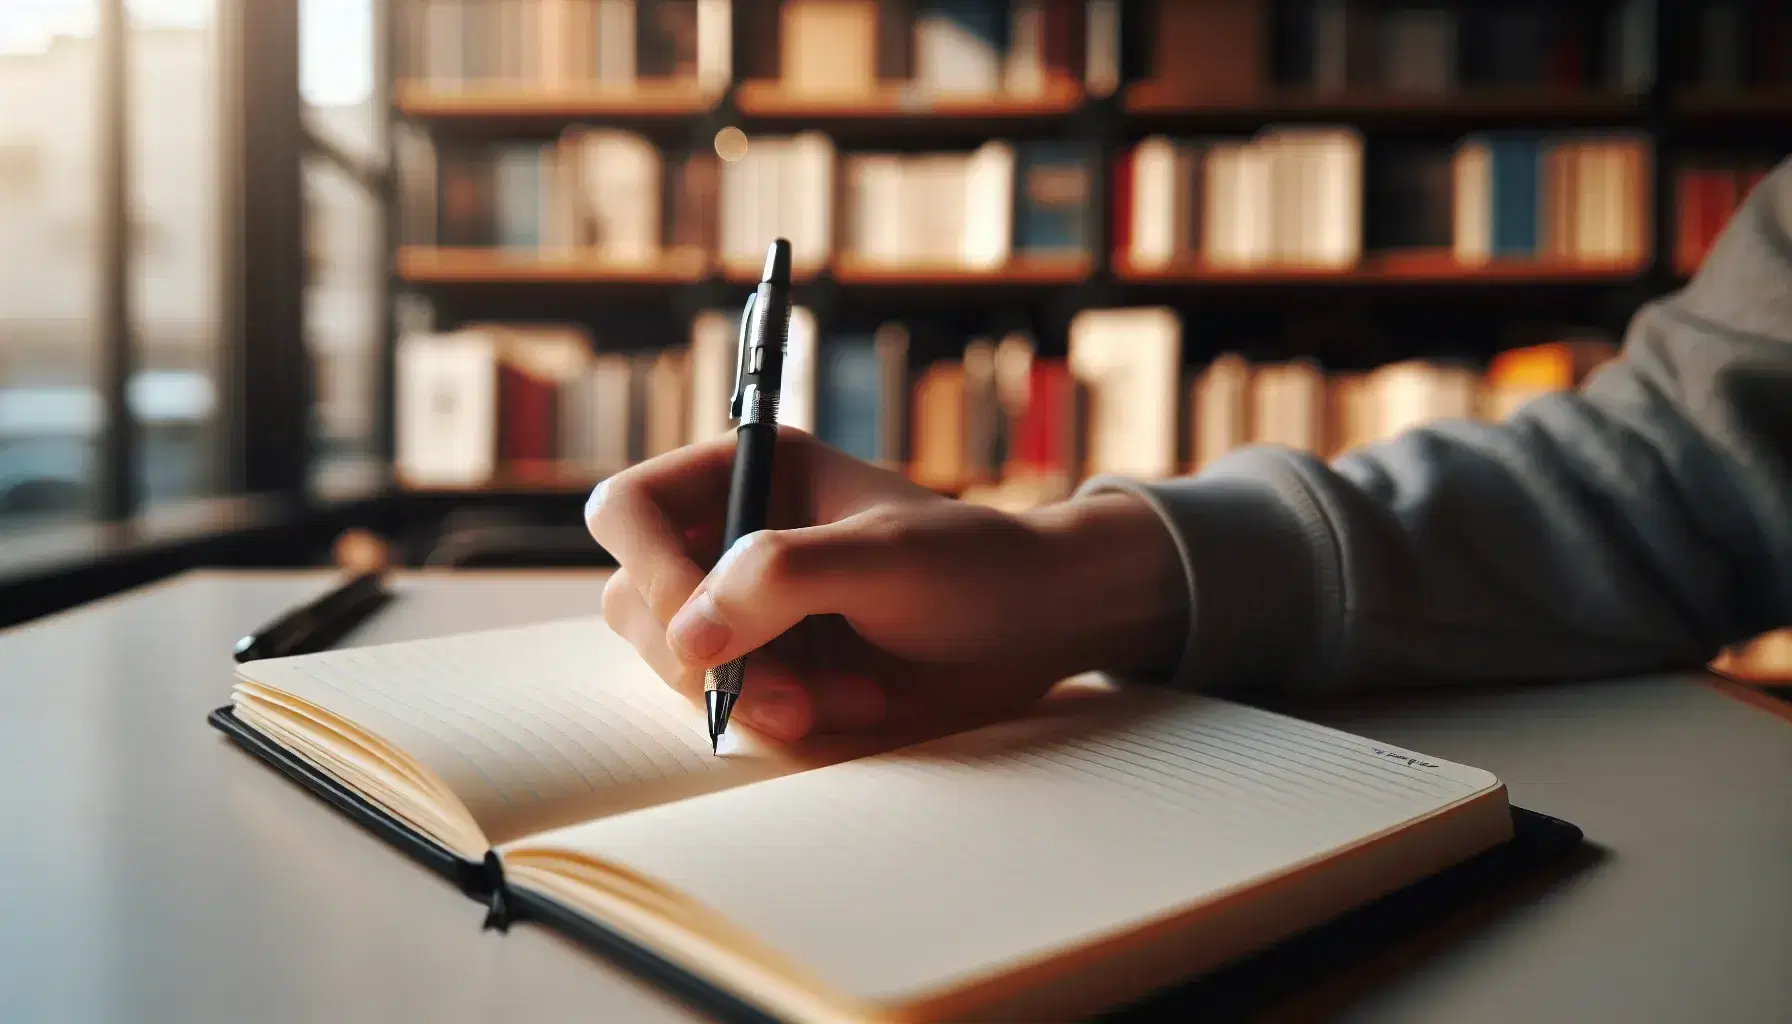 Mano sujetando un bolígrafo negro mientras escribe en un cuaderno abierto con páginas color crema y líneas azules, fondo desenfocado con estantes de libros.